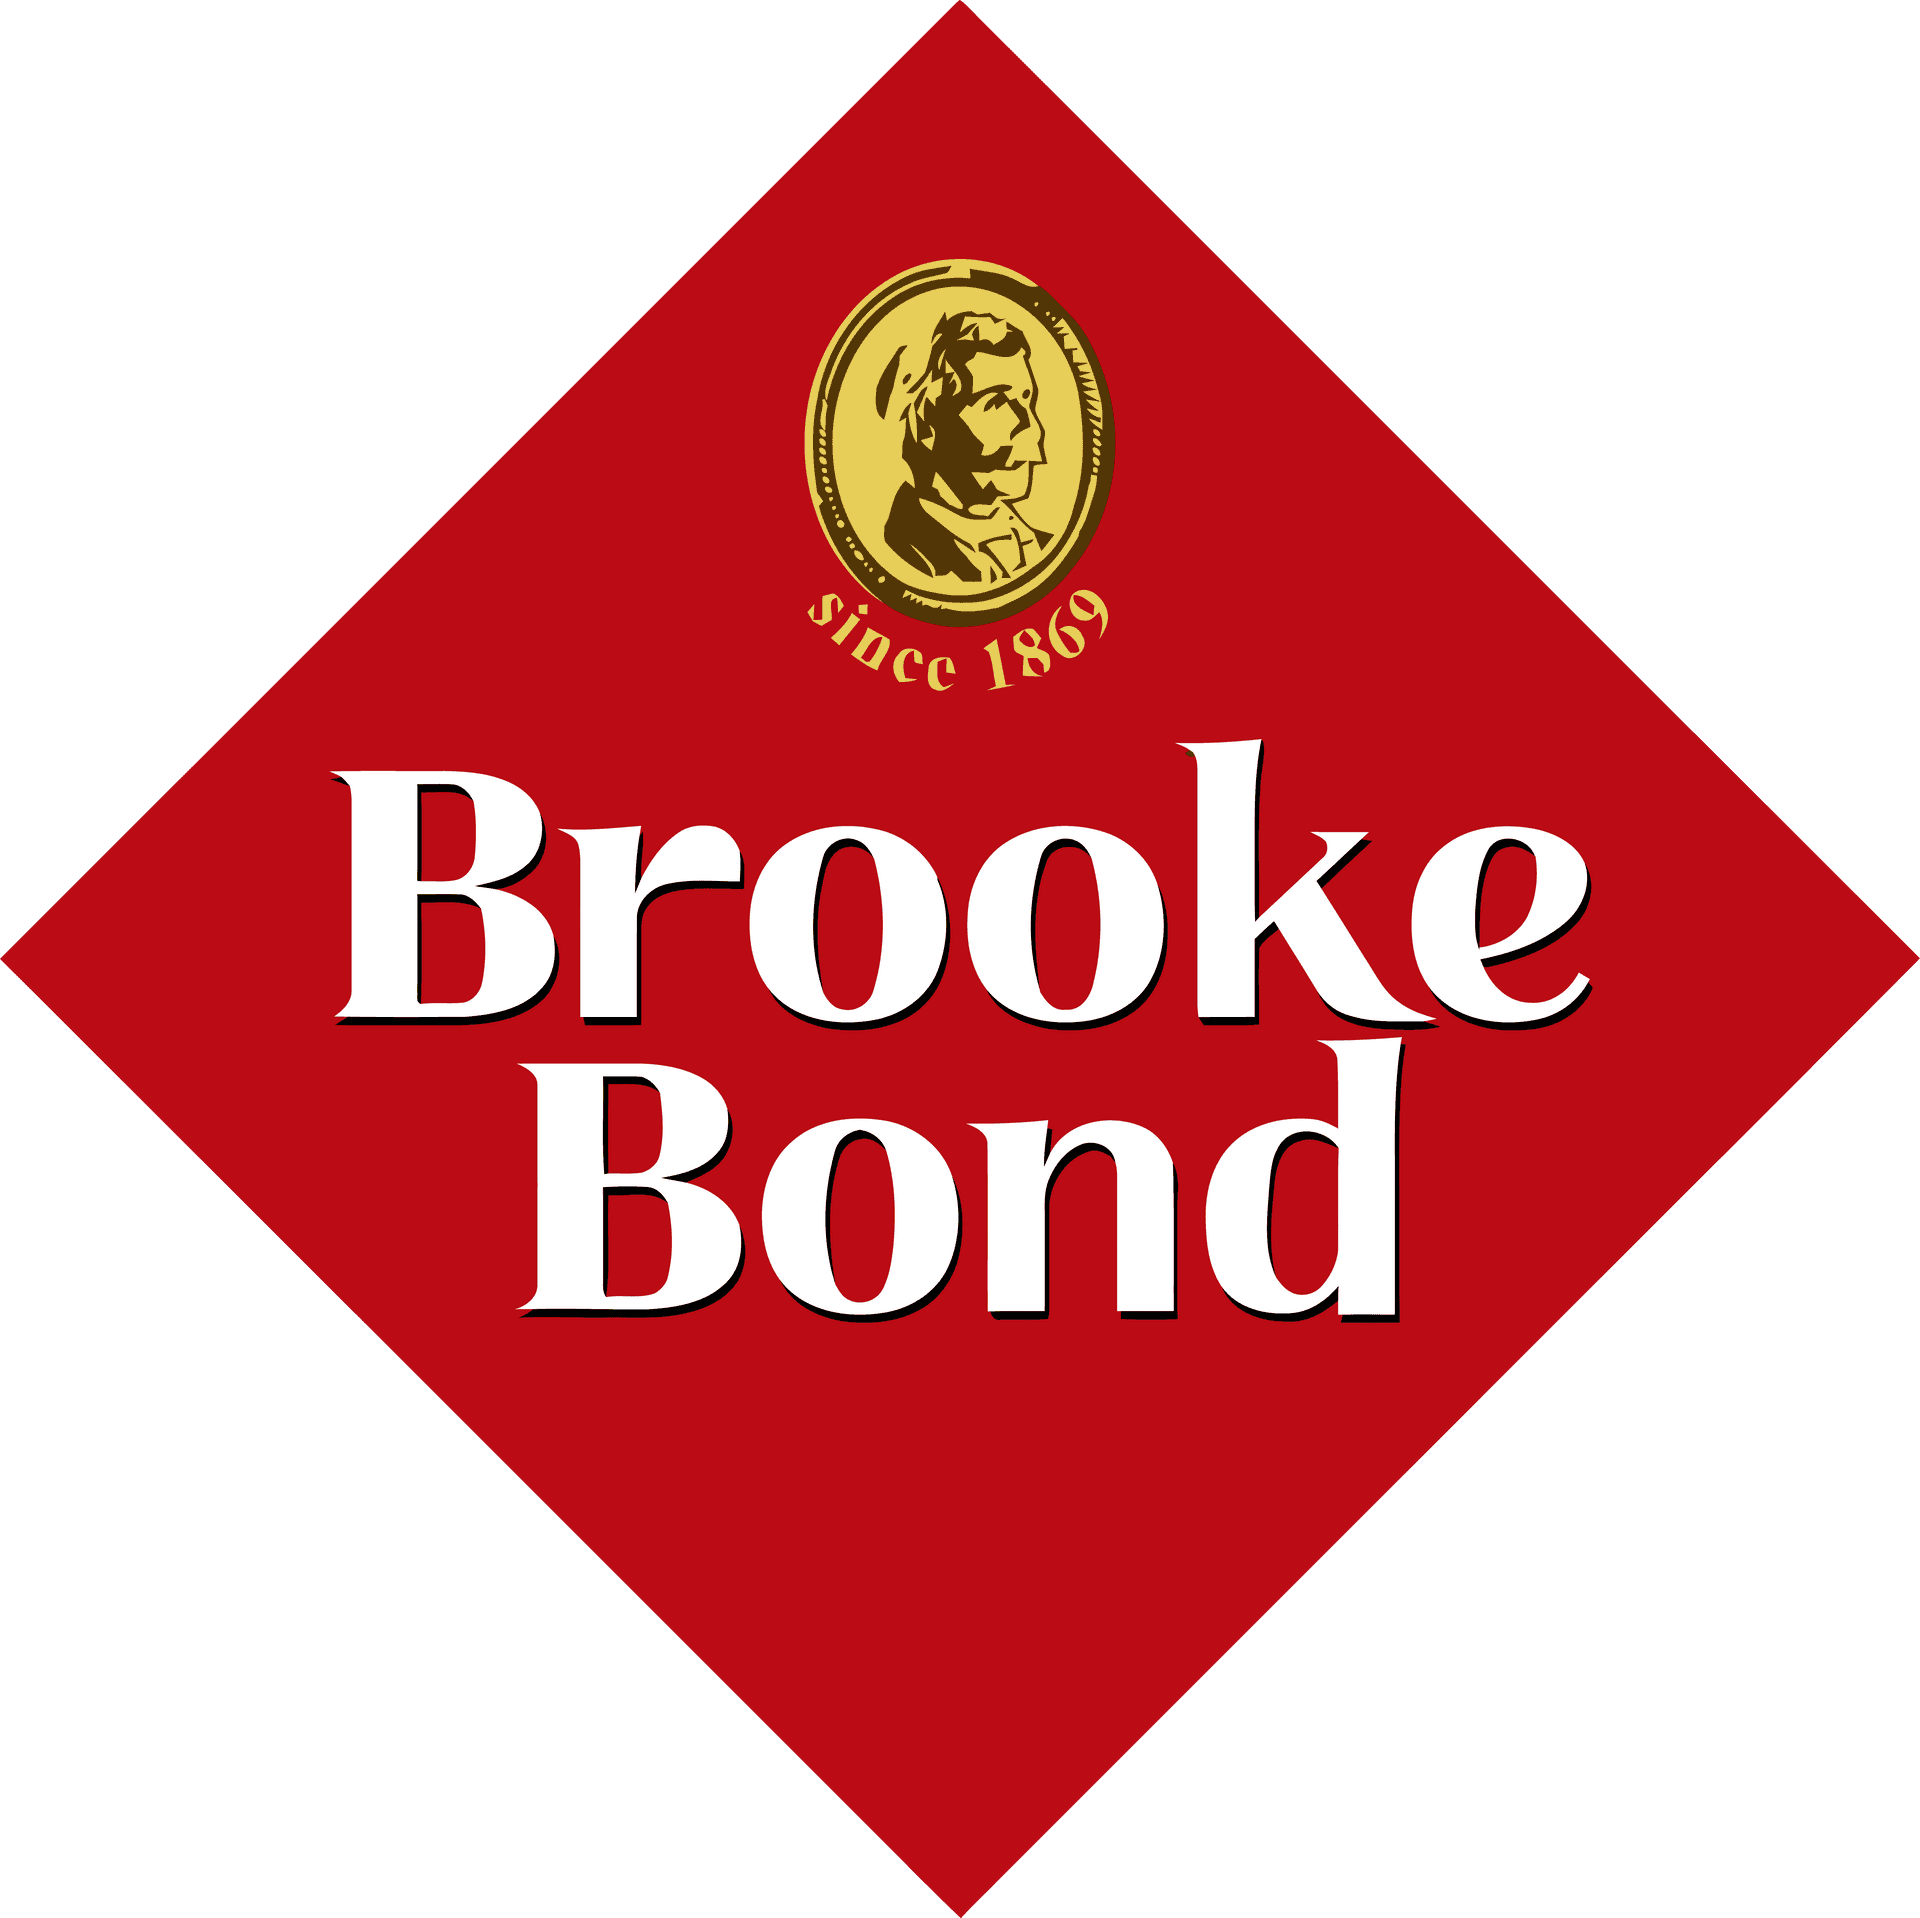 Brooke Bond Logo Design PNG image